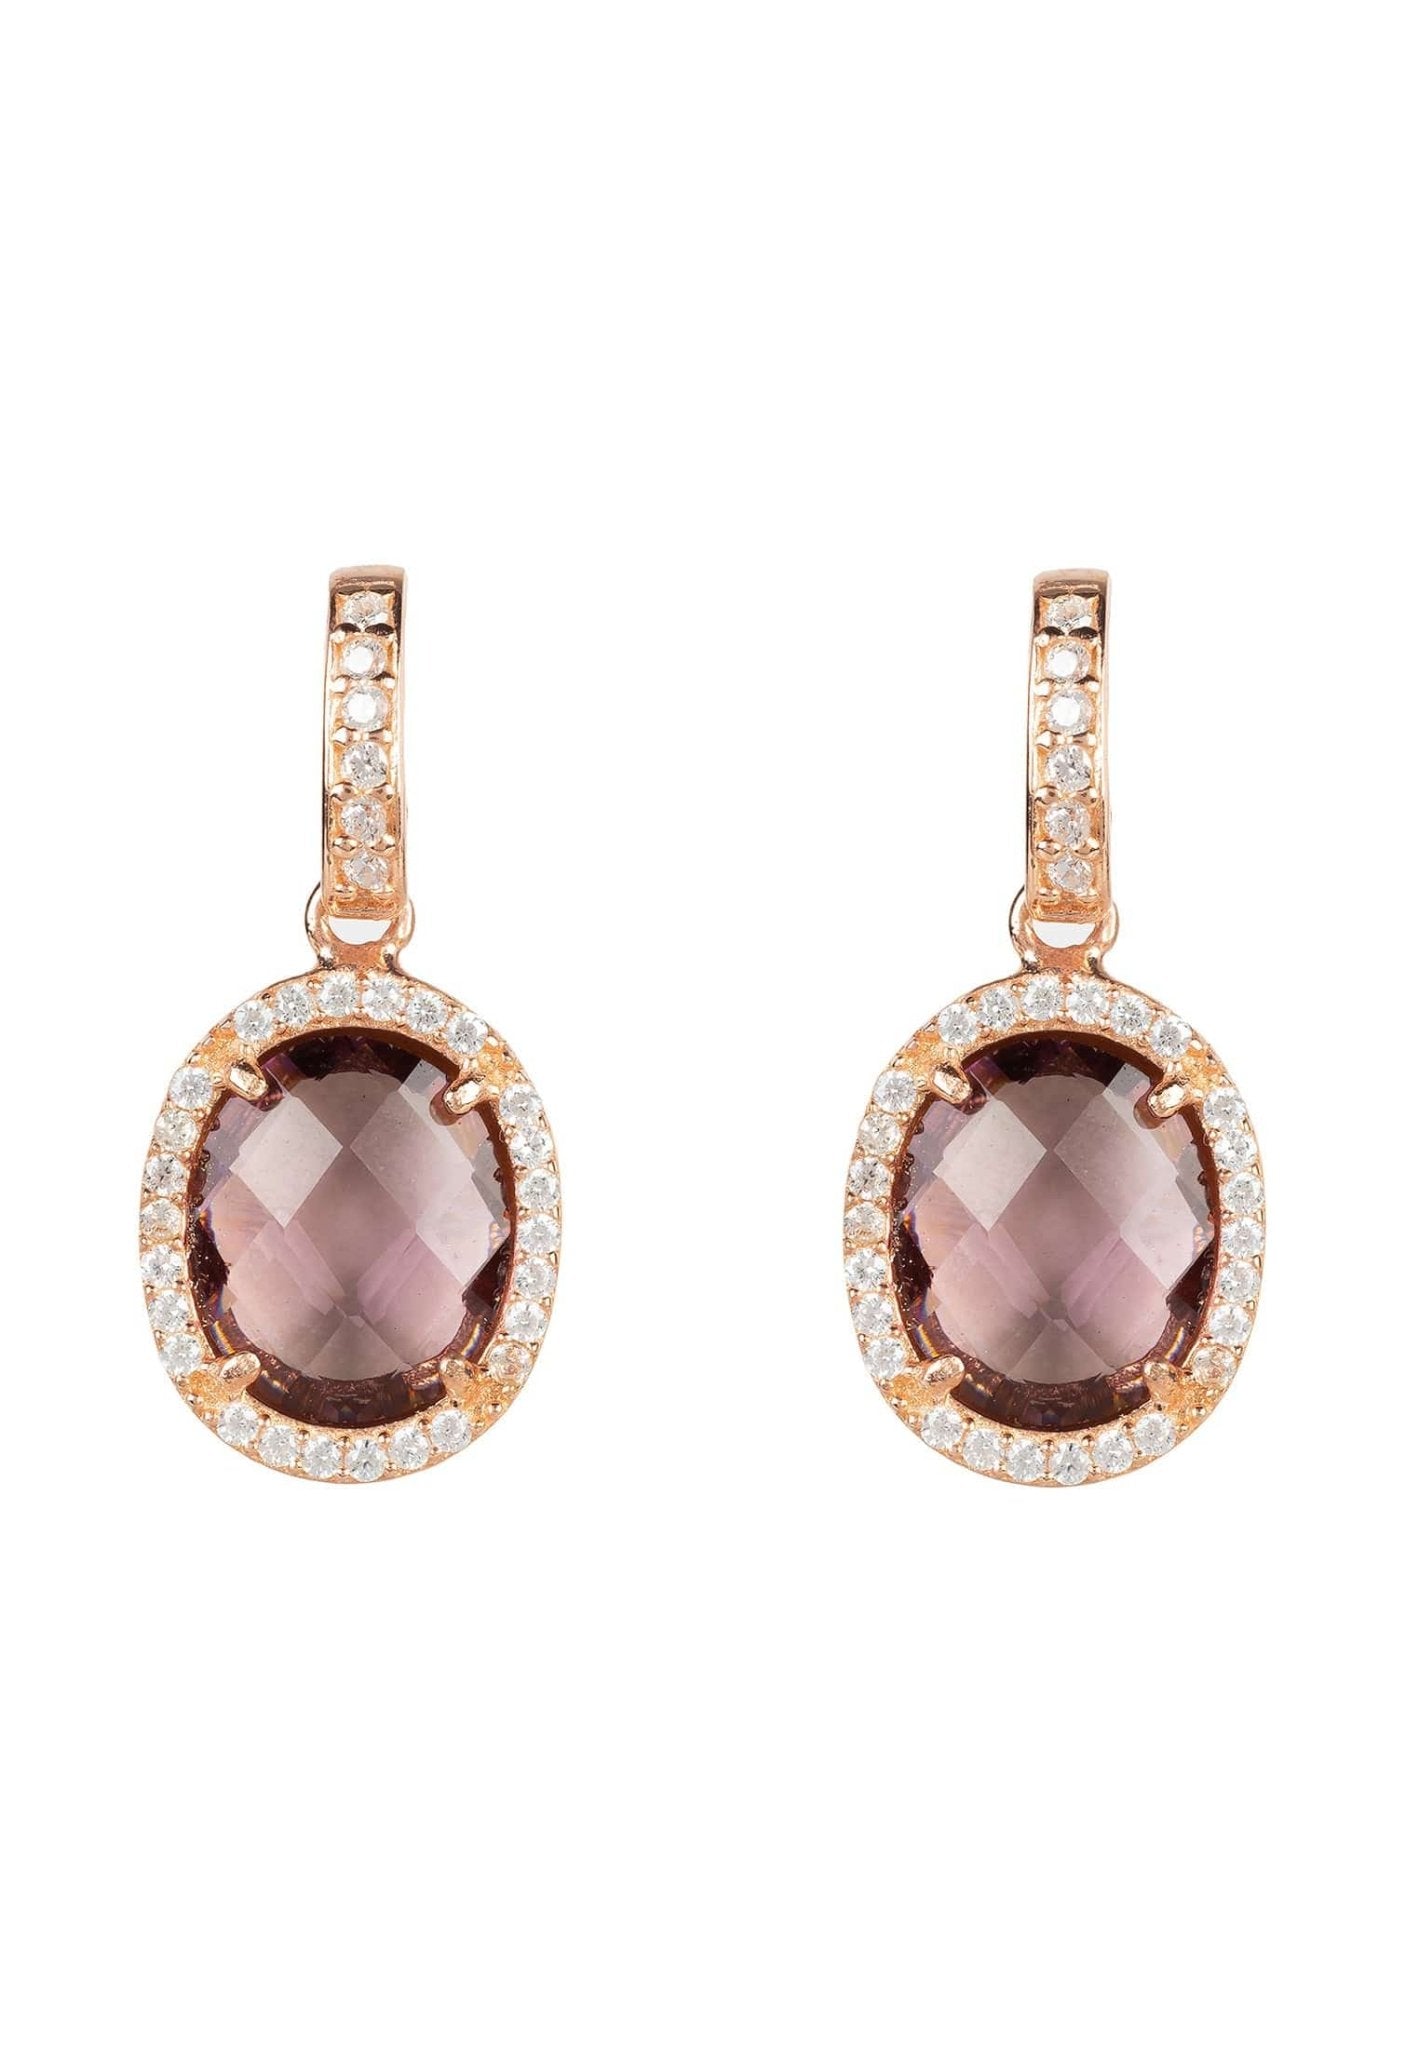 Beatrice Oval Gemstone Drop Earrings Rose Gold Amethyst Hydro - LATELITA Earrings